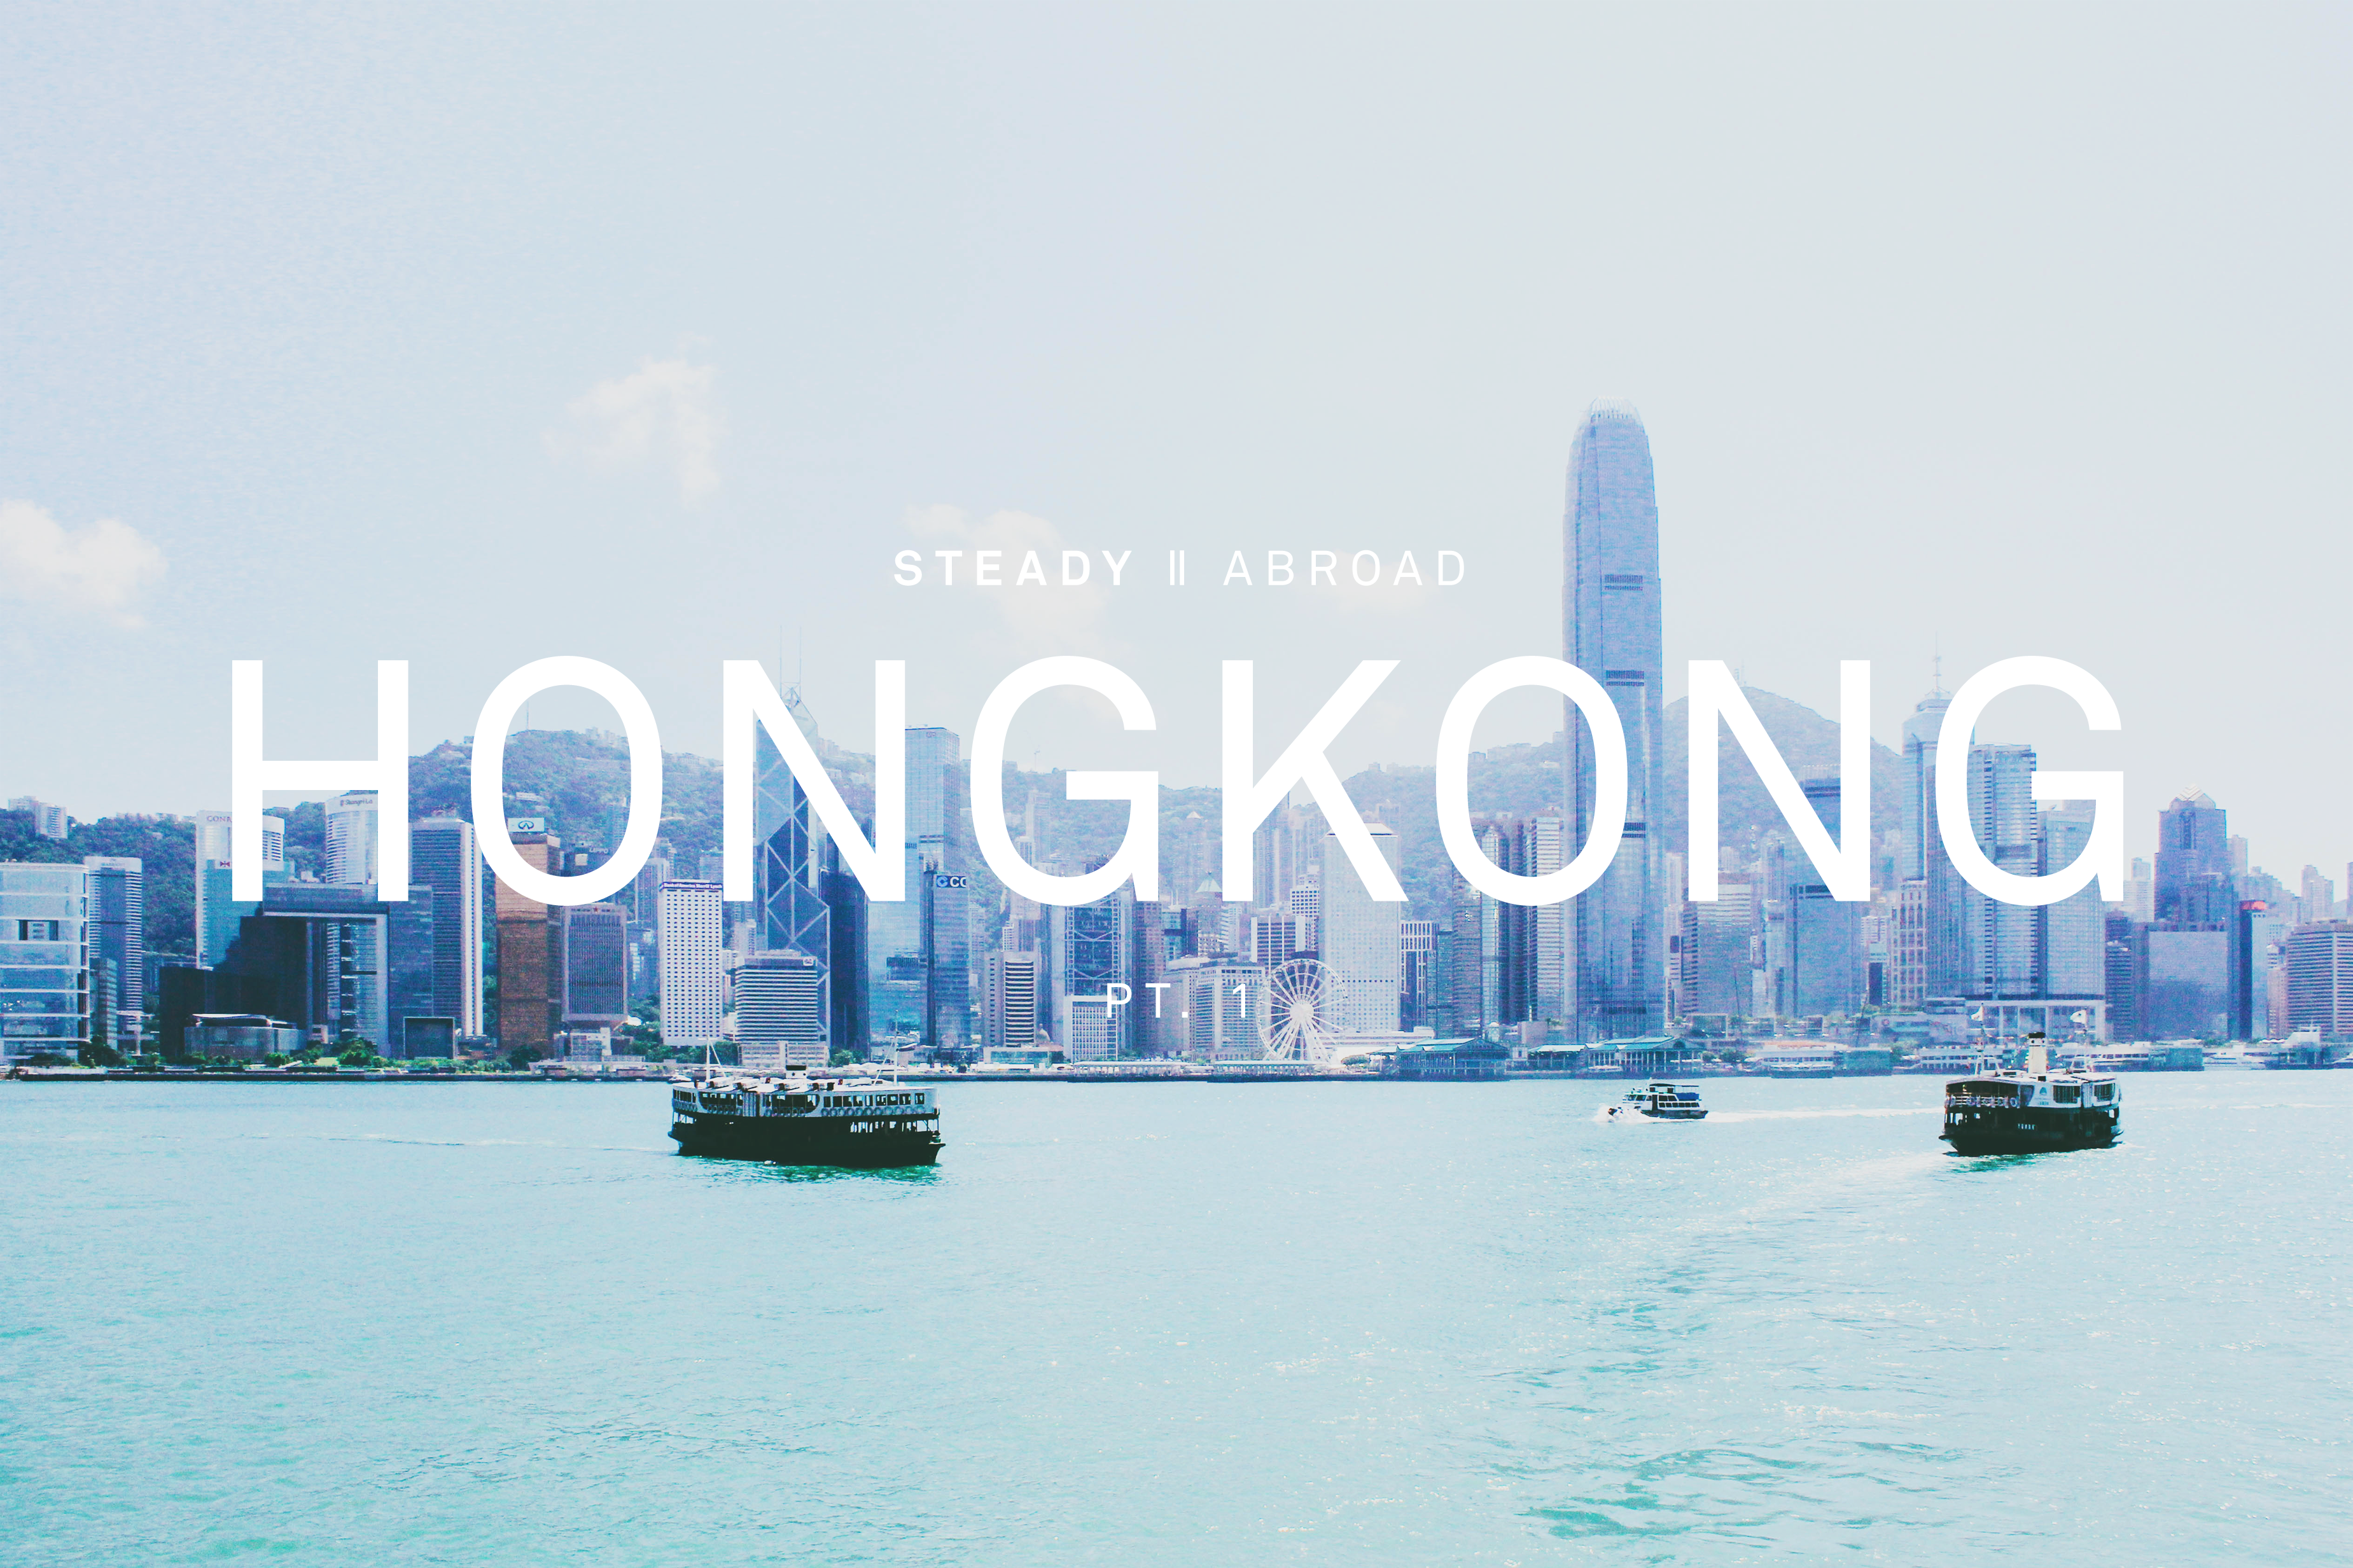 STEADY ABROAD: HONG KONG PT.1